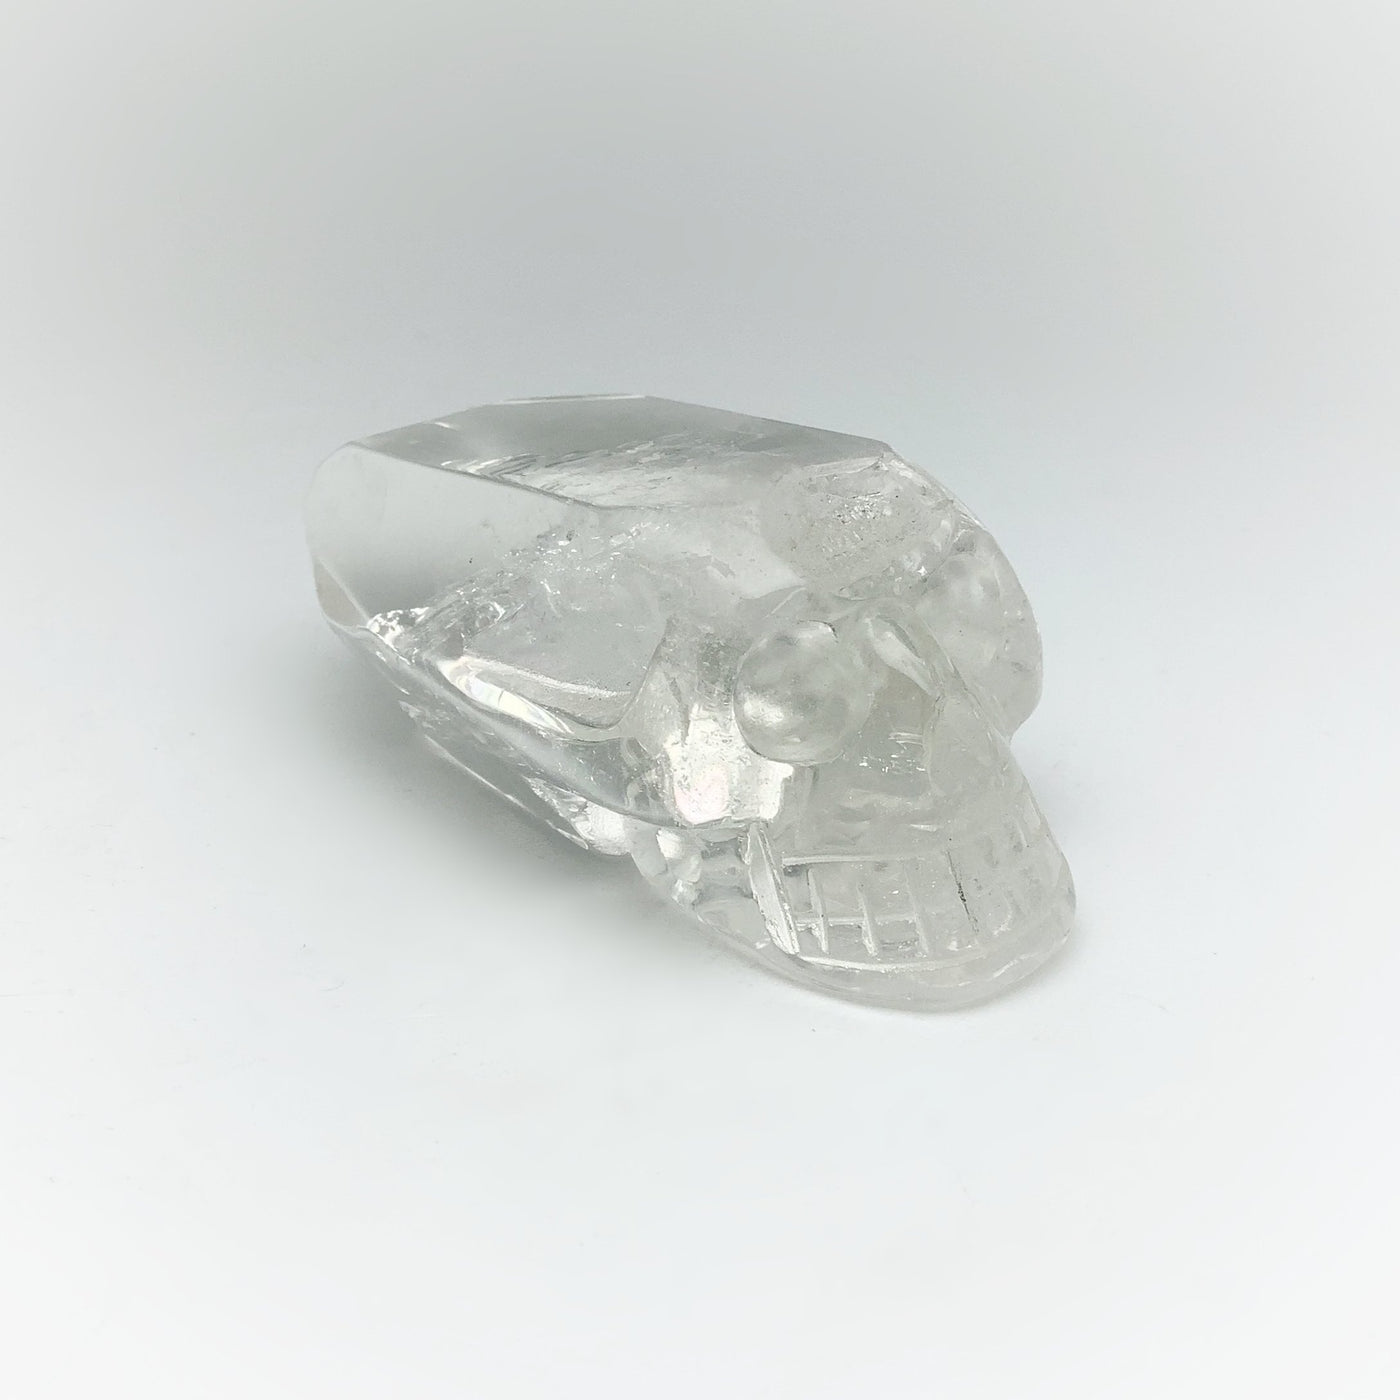 Carved Quartz Point Crystal Skull